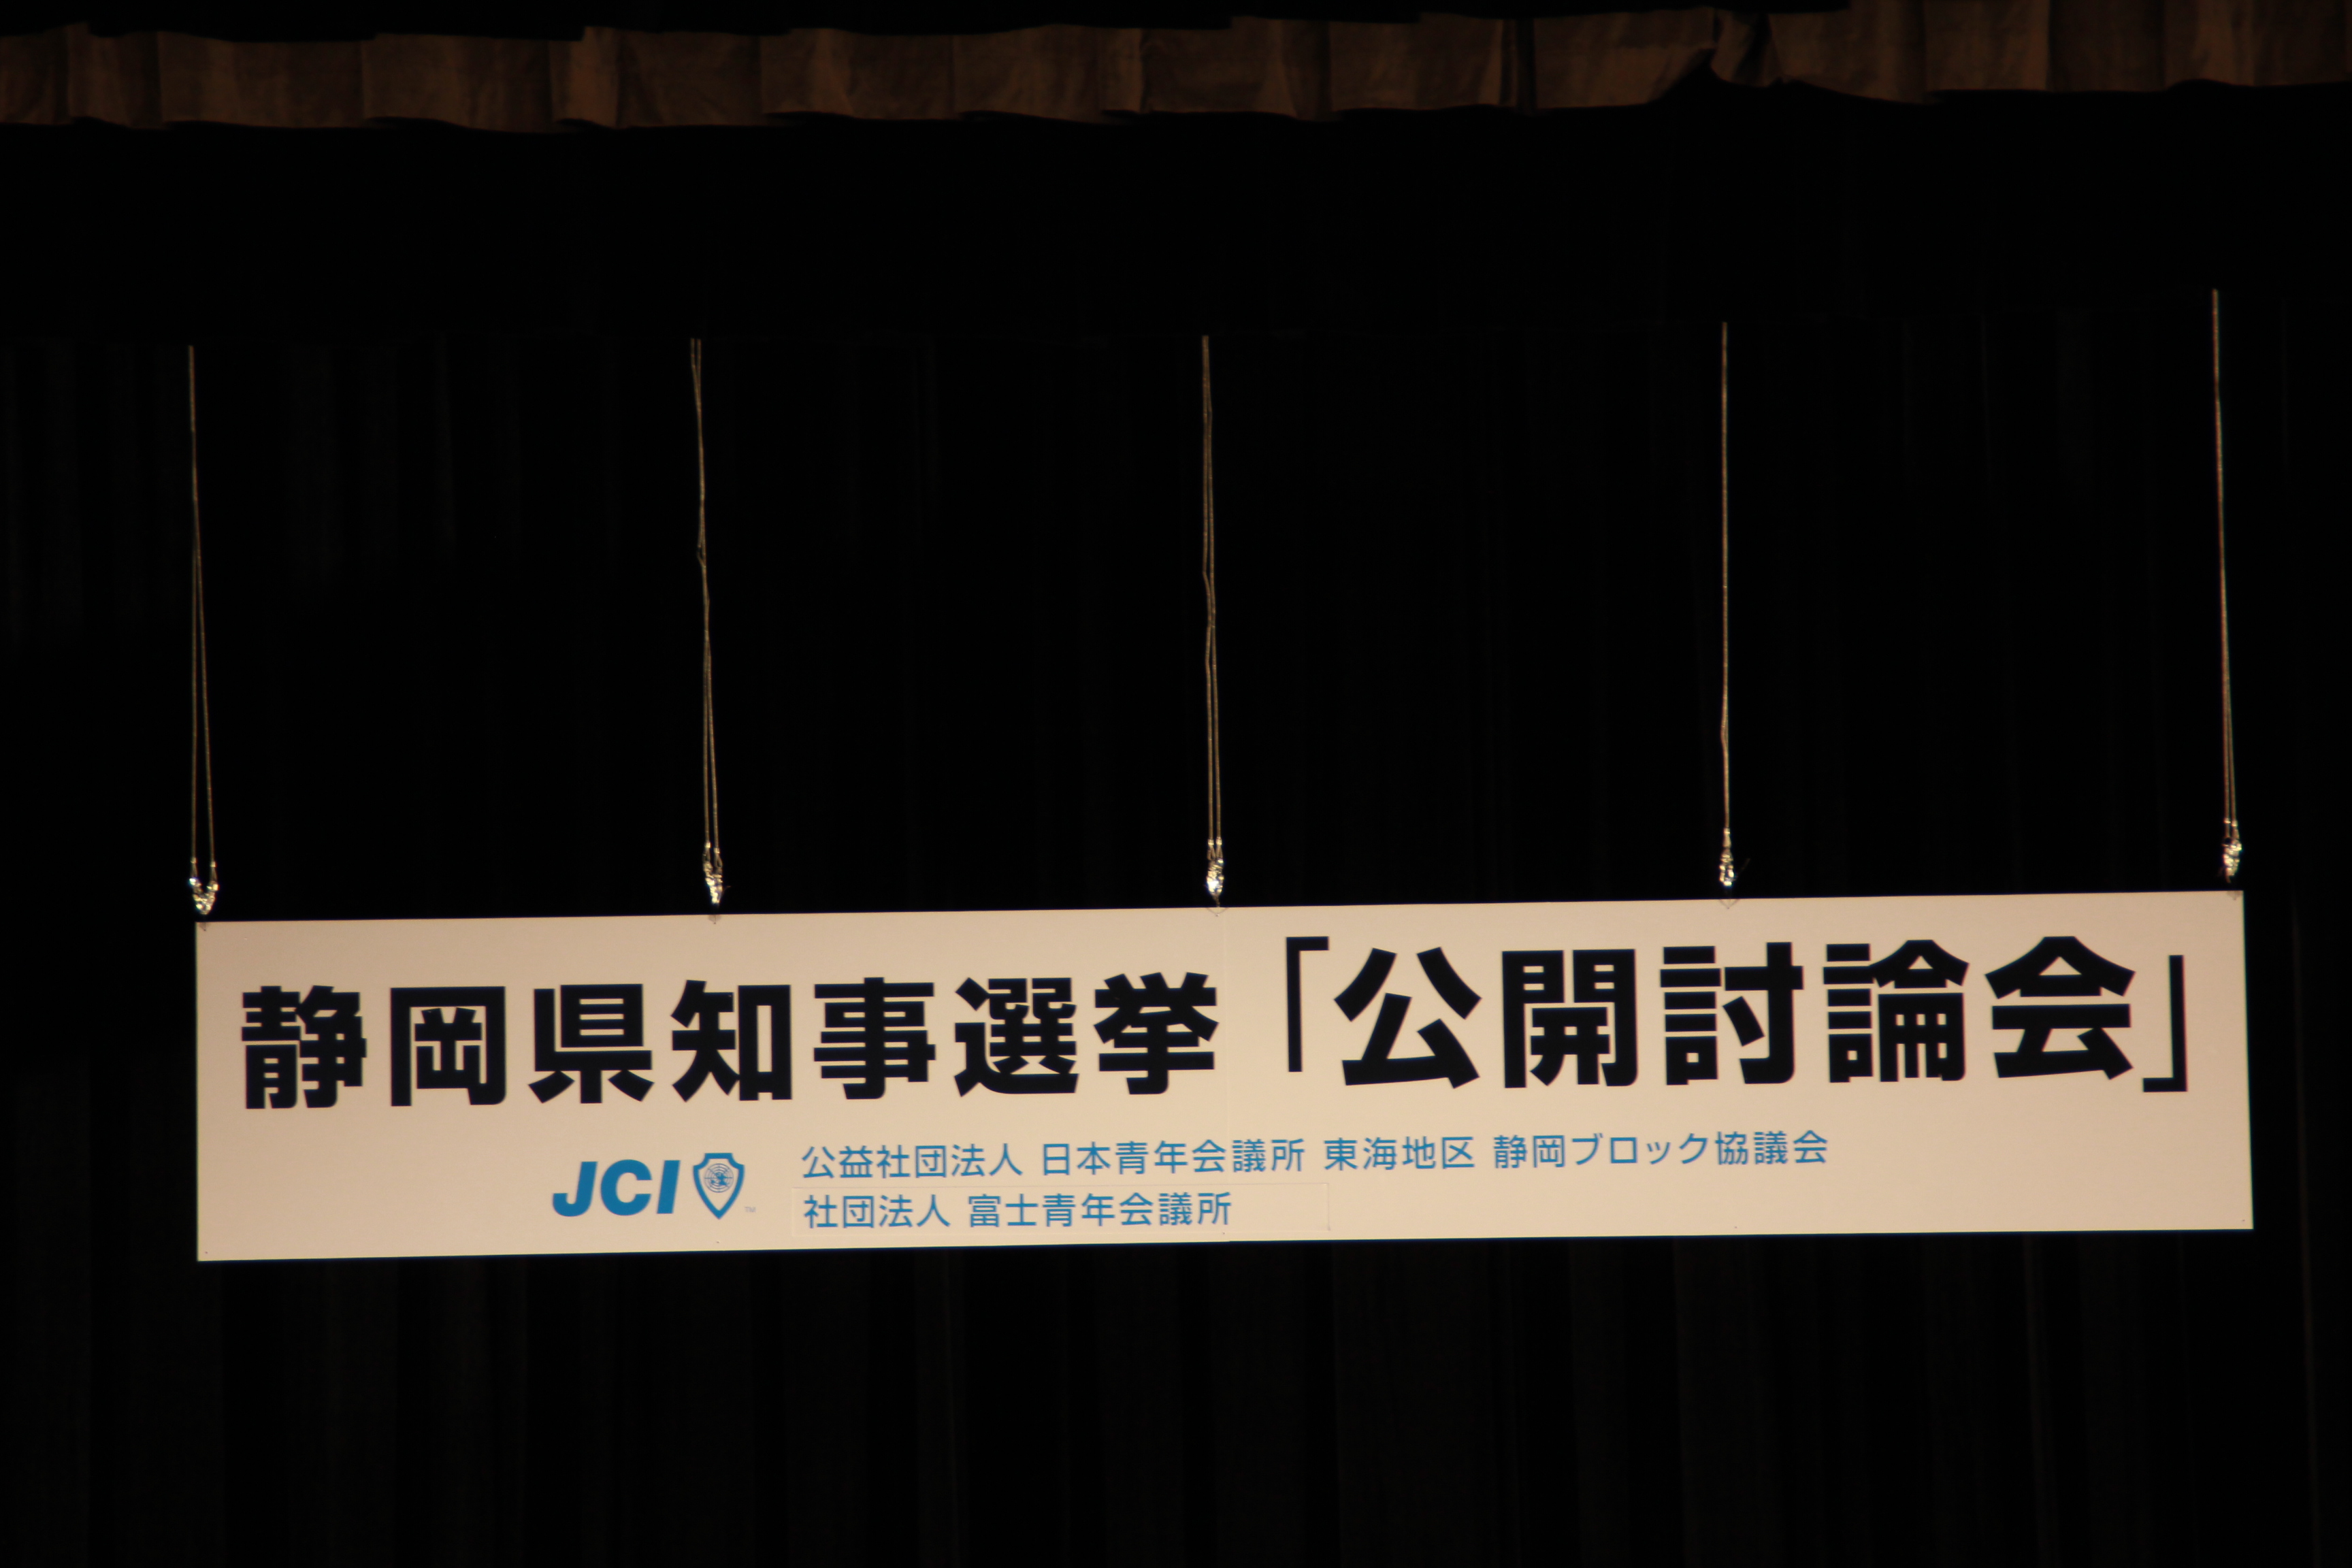 一般社団法人富士宮青年会議所 静岡県知事選挙 公開討論会